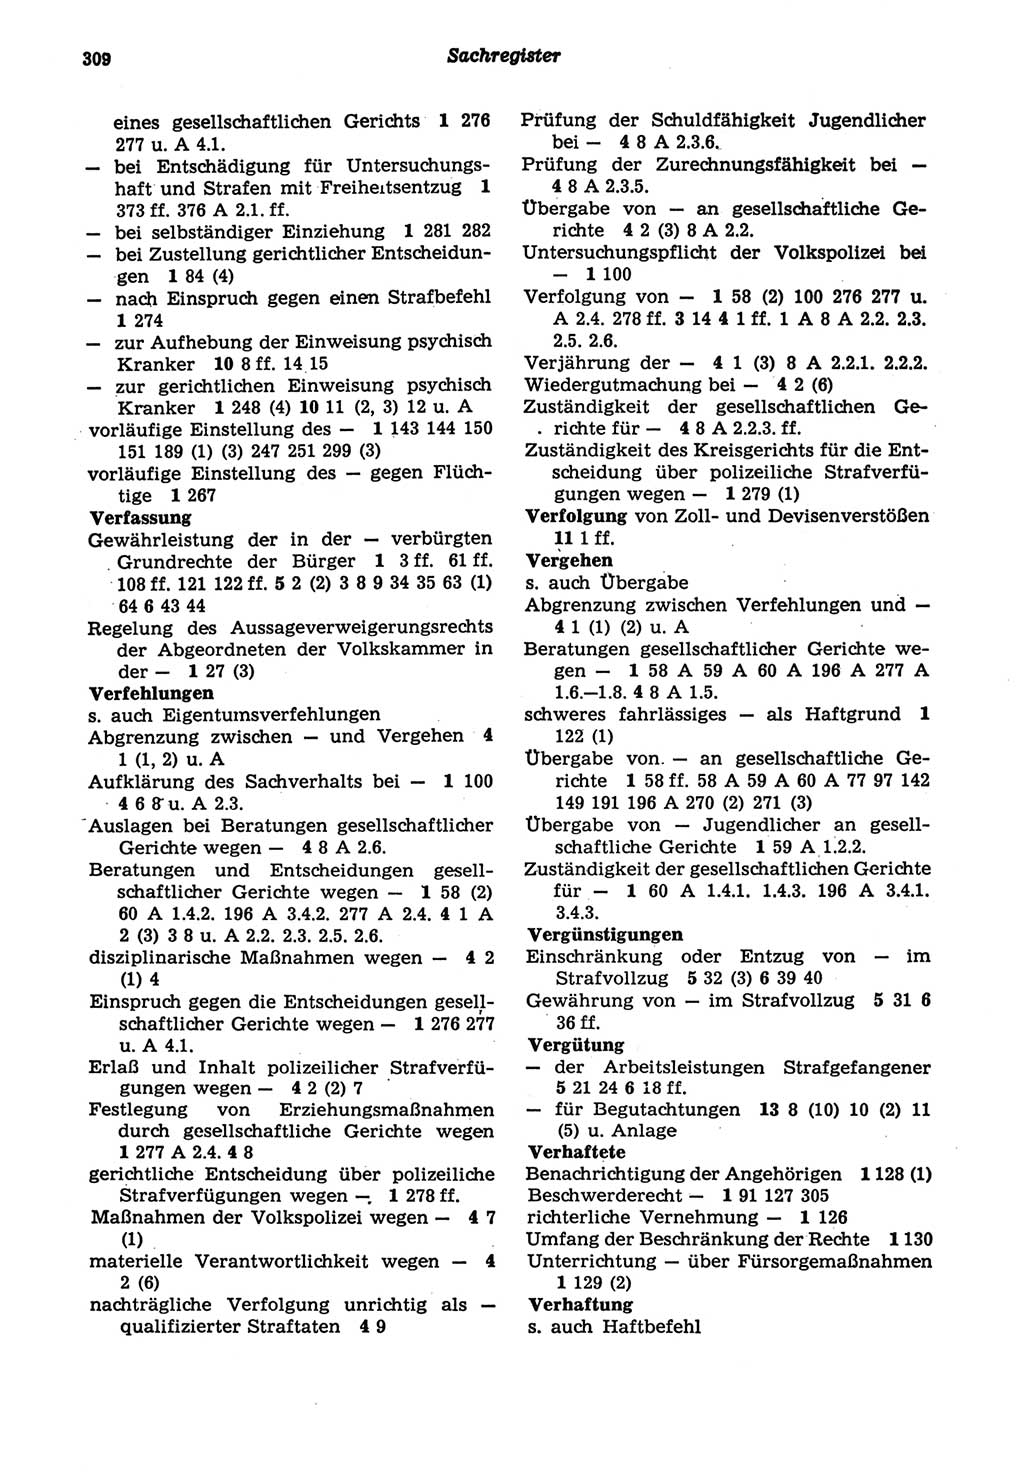 Strafprozeßordnung (StPO) der Deutschen Demokratischen Republik (DDR) sowie angrenzende Gesetze und Bestimmungen 1977, Seite 309 (StPO DDR Ges. Best. 1977, S. 309)